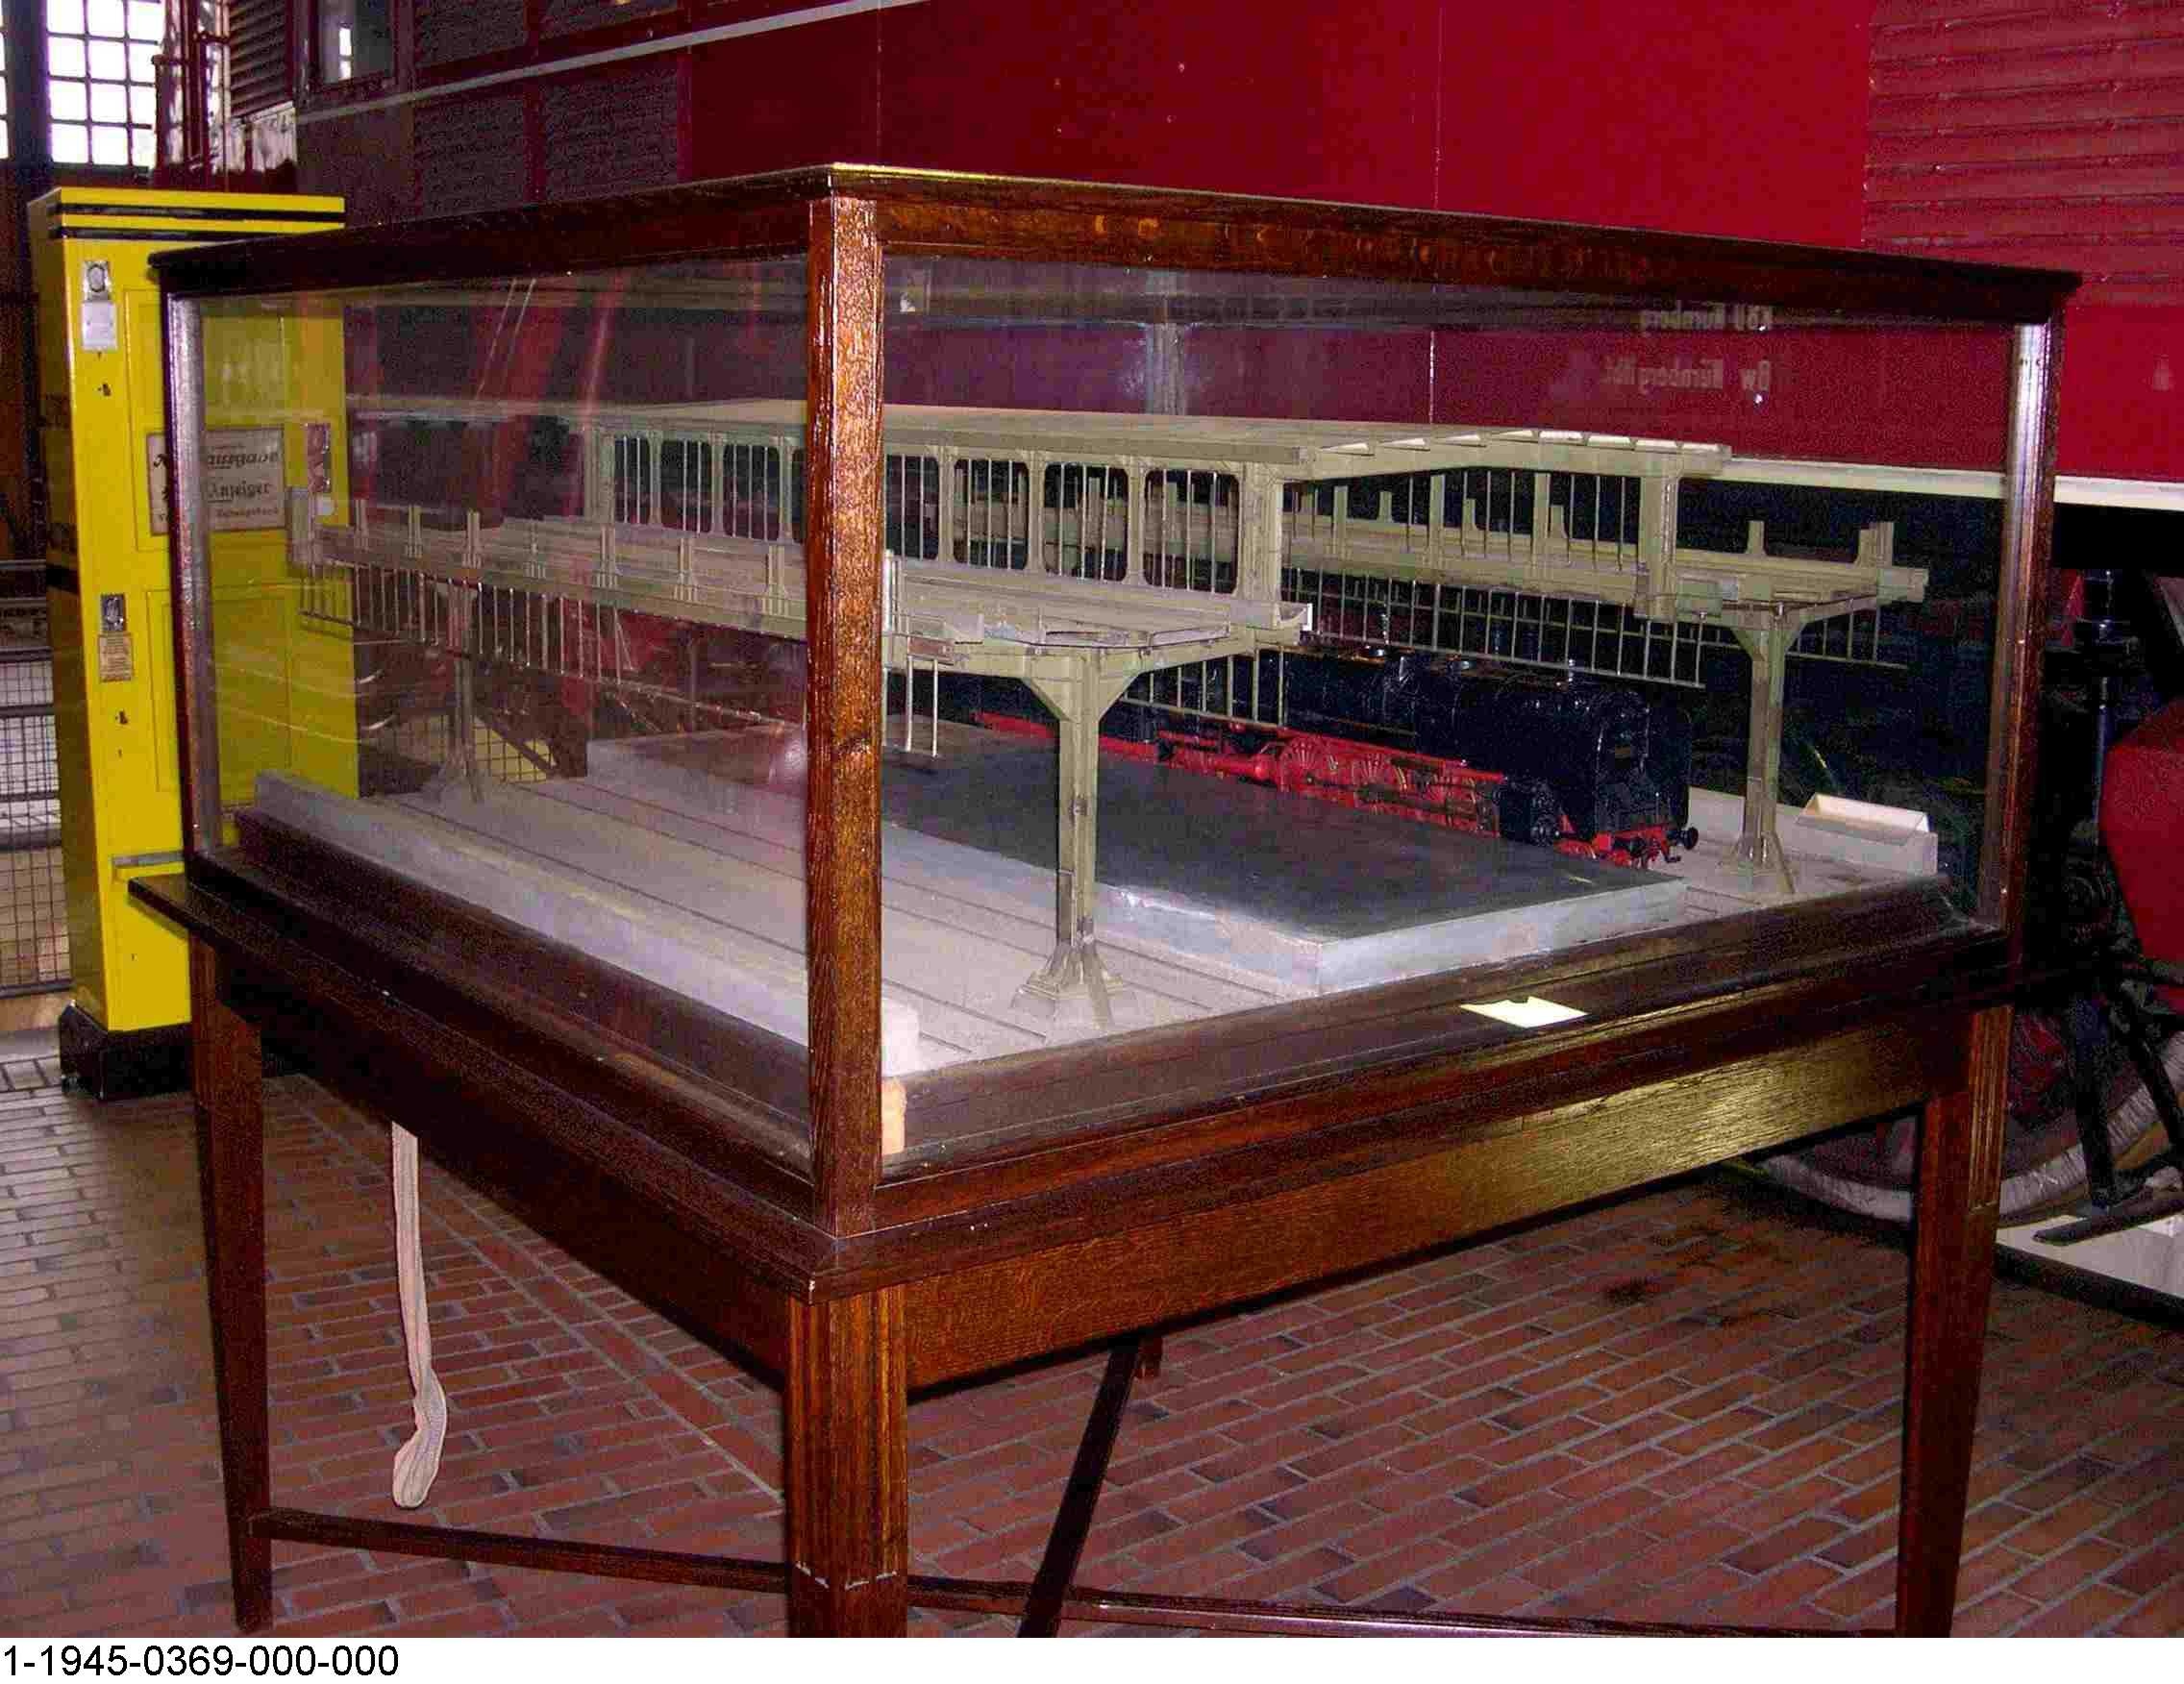 Bahnsteighalle des Düsseldorfer Hauptbahnhofs, Modell 1:20 (Stiftung Deutsches Technikmuseum Berlin CC0)